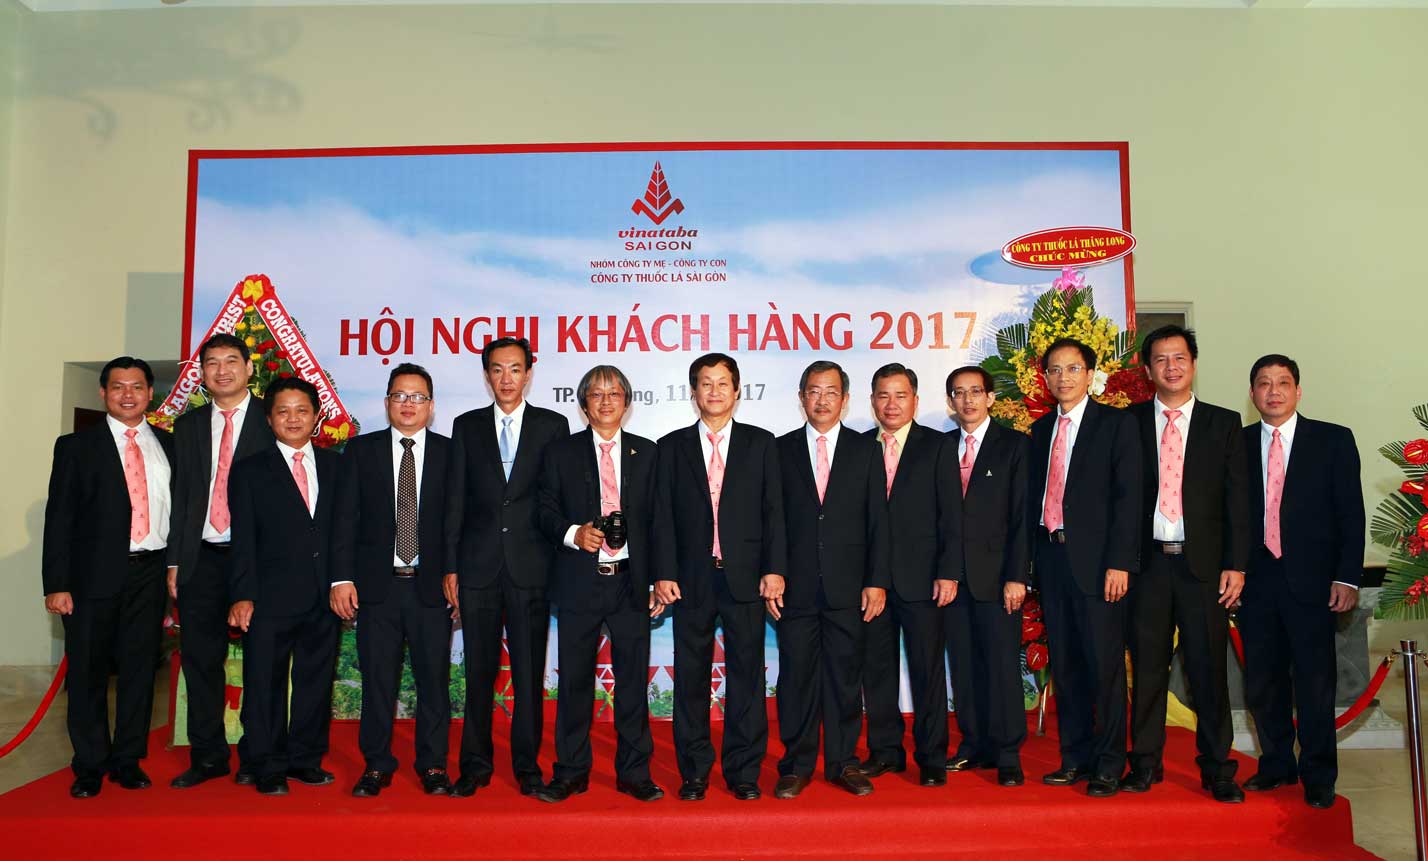 Đại diện tập thể lãnh đạo và cán bộ chức danh của Công ty Thuốc lá Sài Gòn tham dự hội nghị